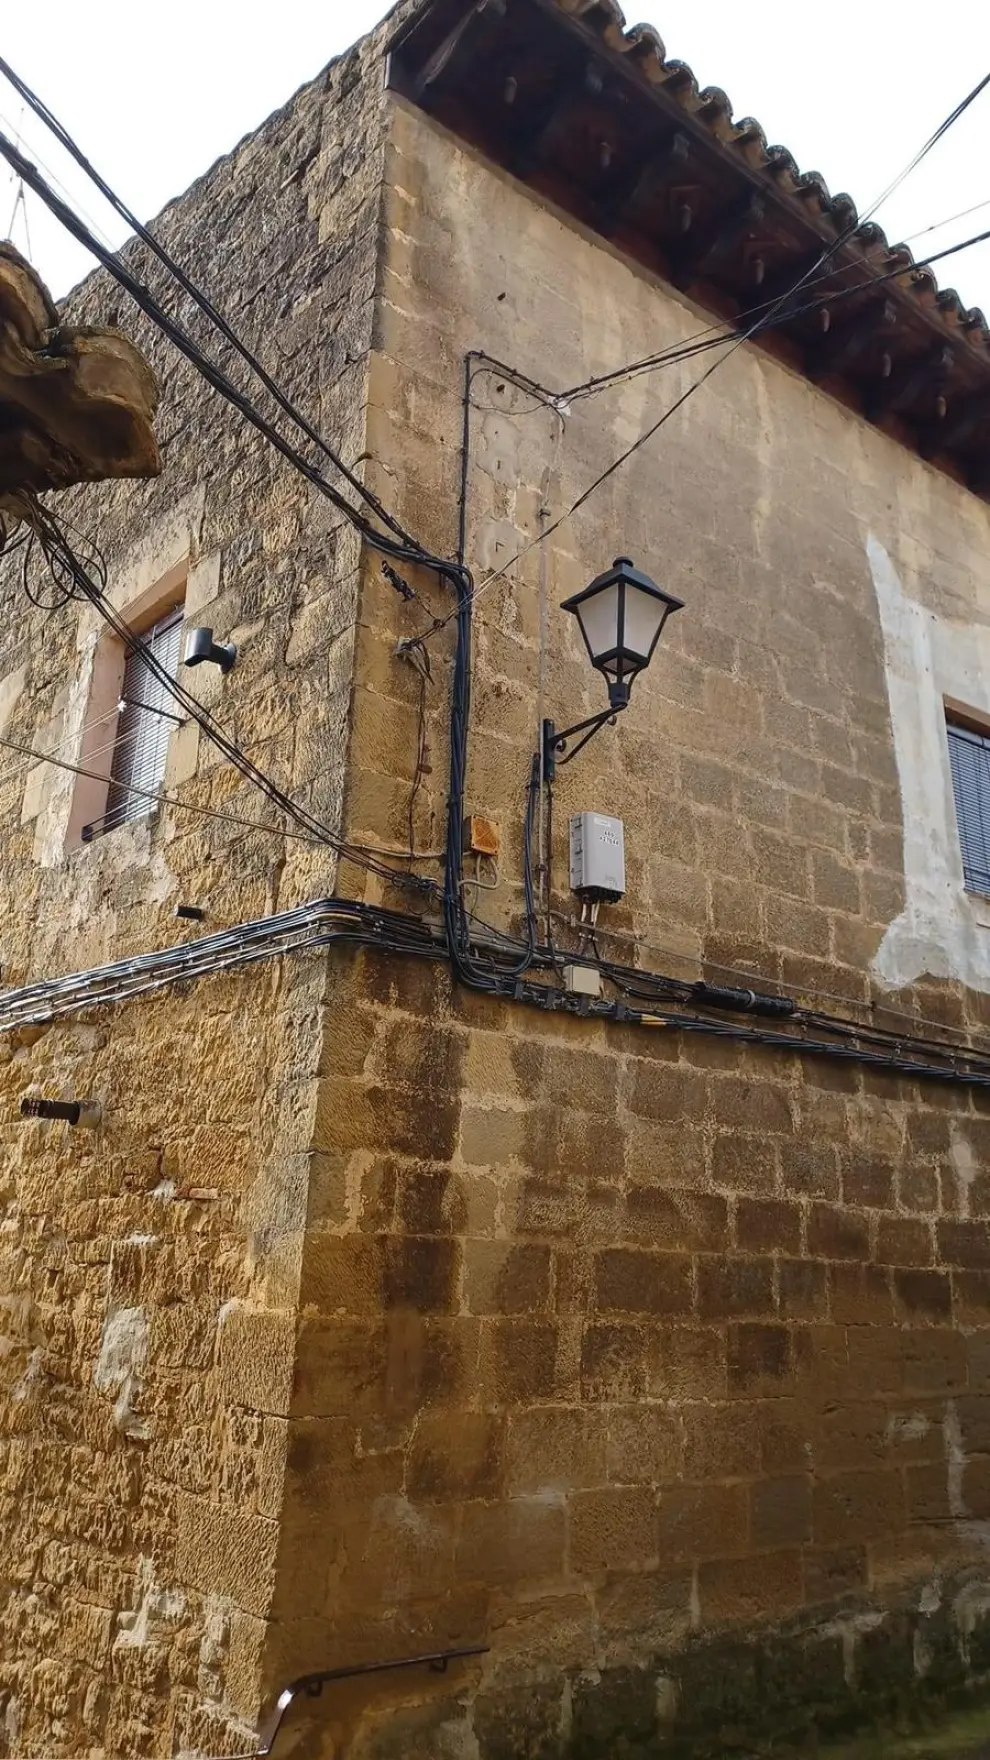 Uncastillo, conjunto histórico artístico, tiene numerosos cables en fachadas y calles.